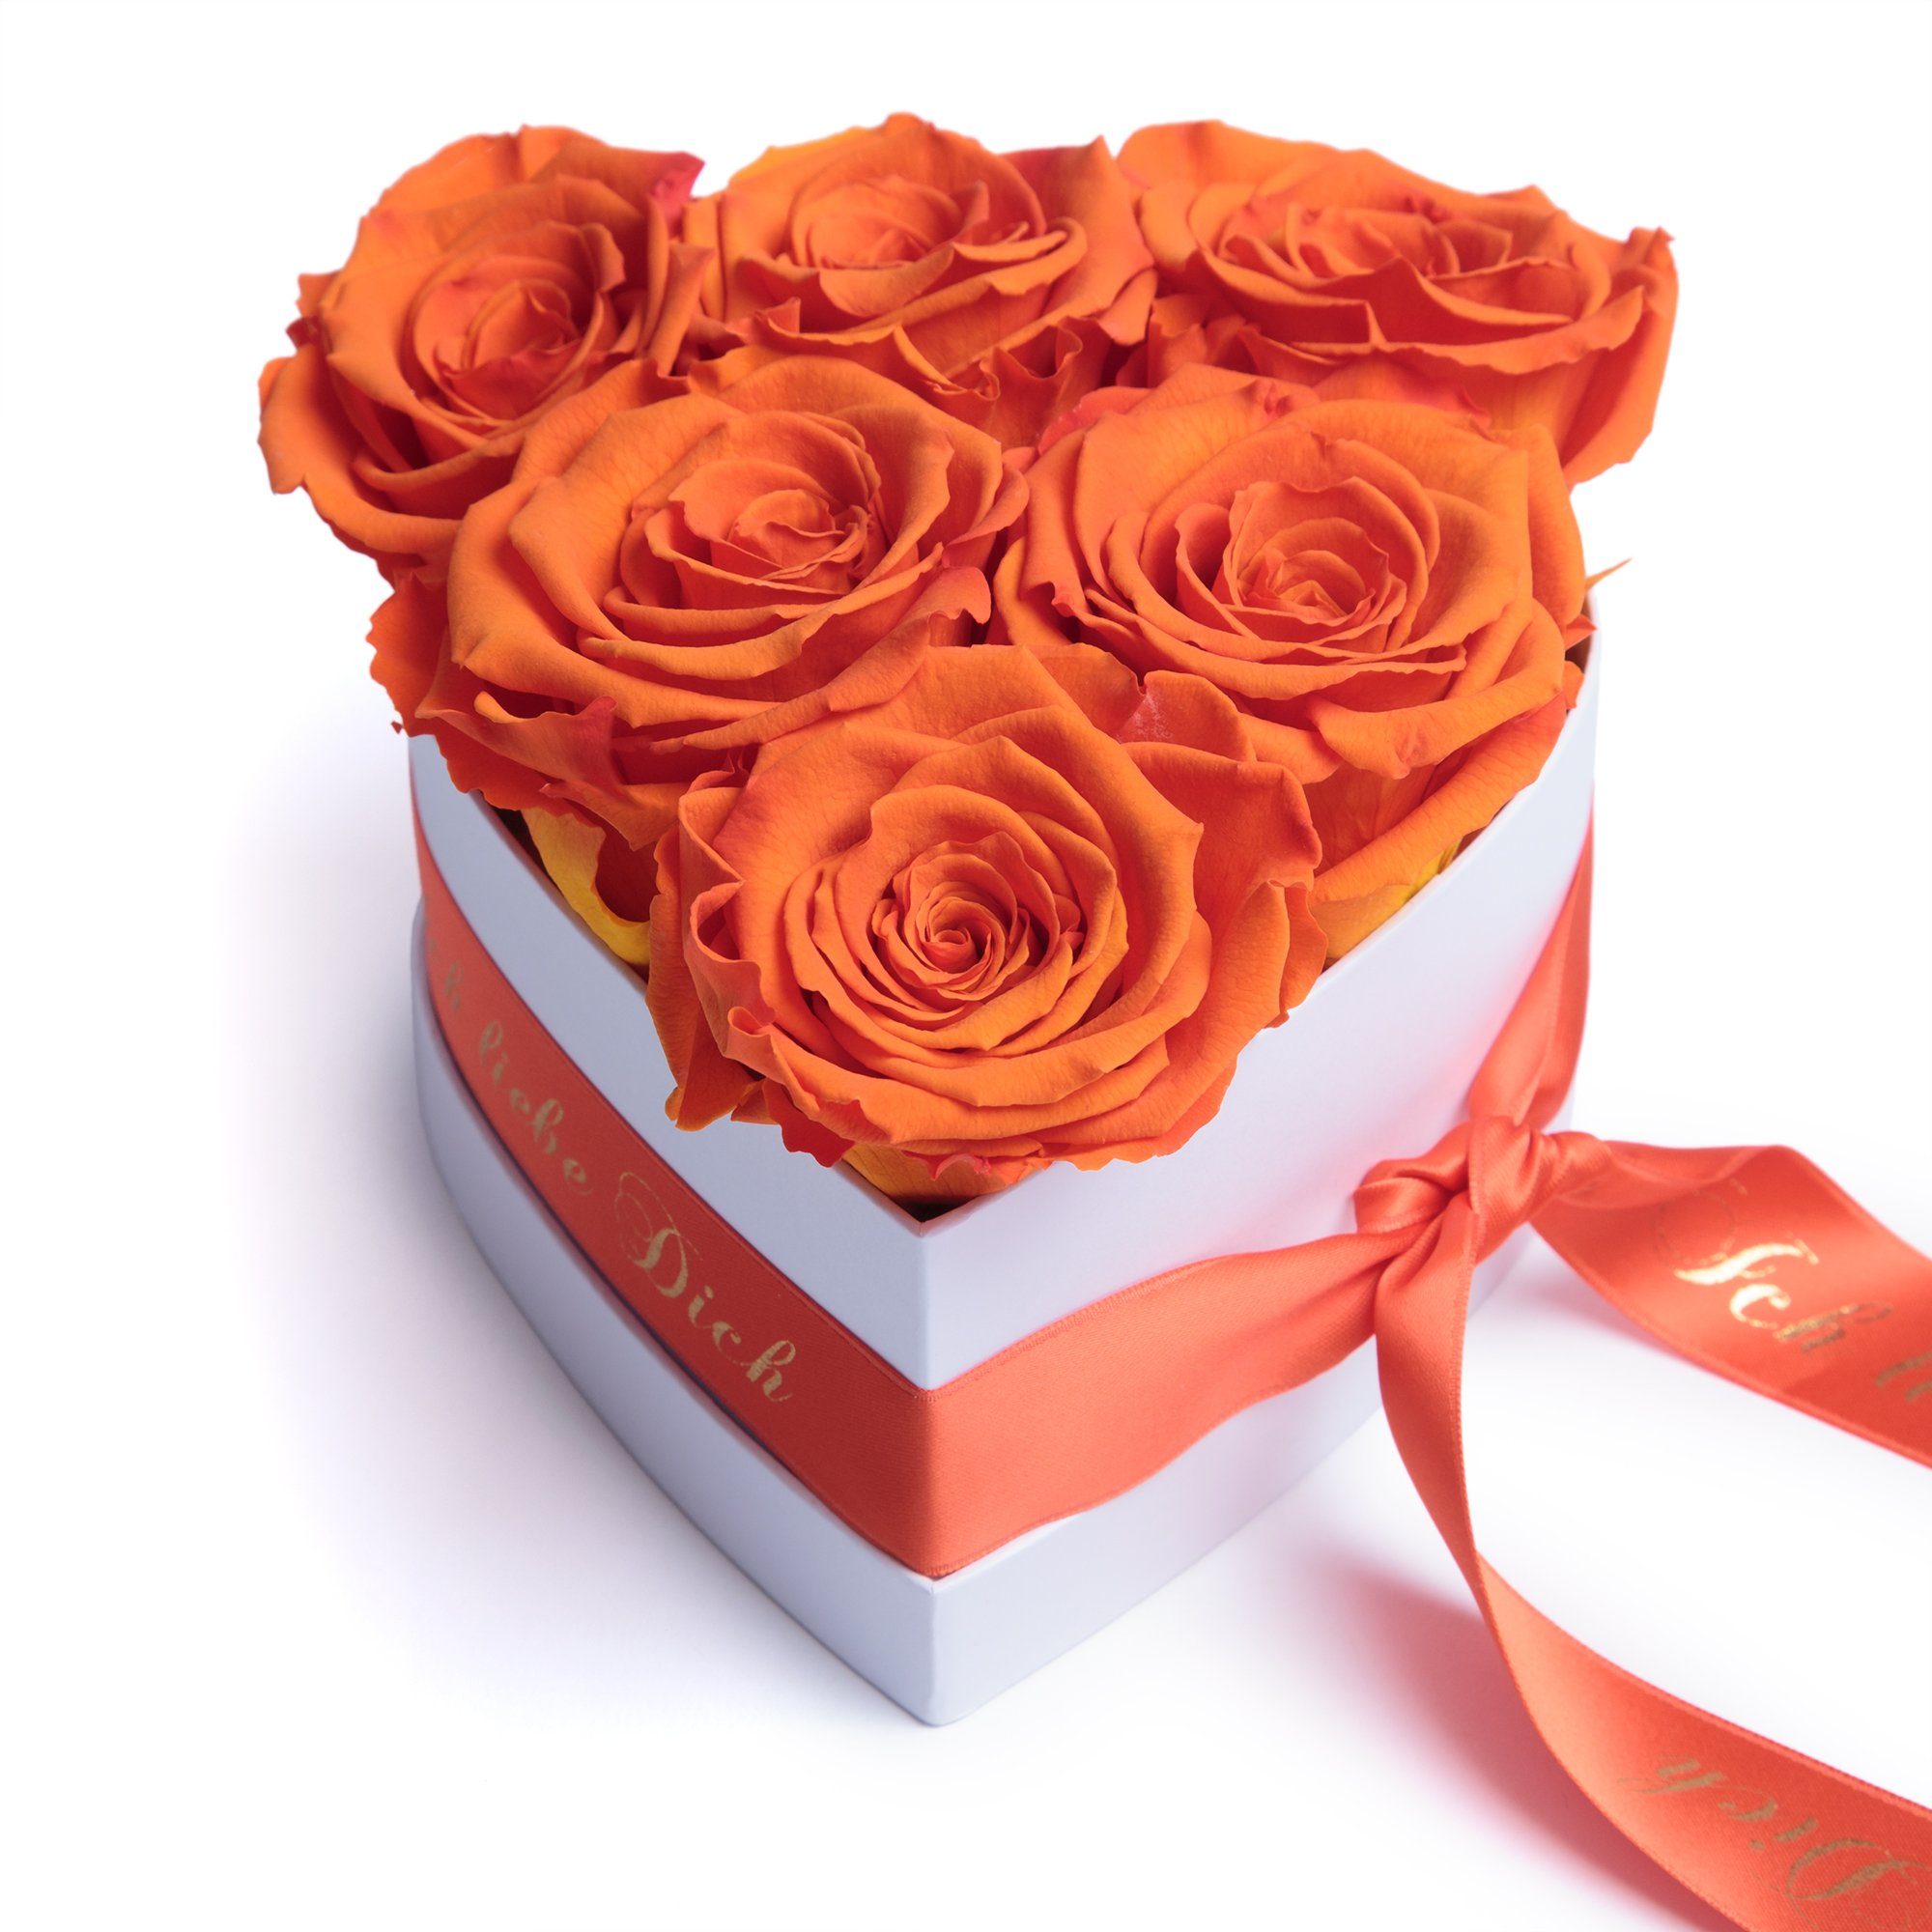 I Love You, Orange ROSEMARIE SCHULZ Heidelberg Blumenherz Infinity Rosenbox in Herzform konservierte Rosen Geschenk für Frauen